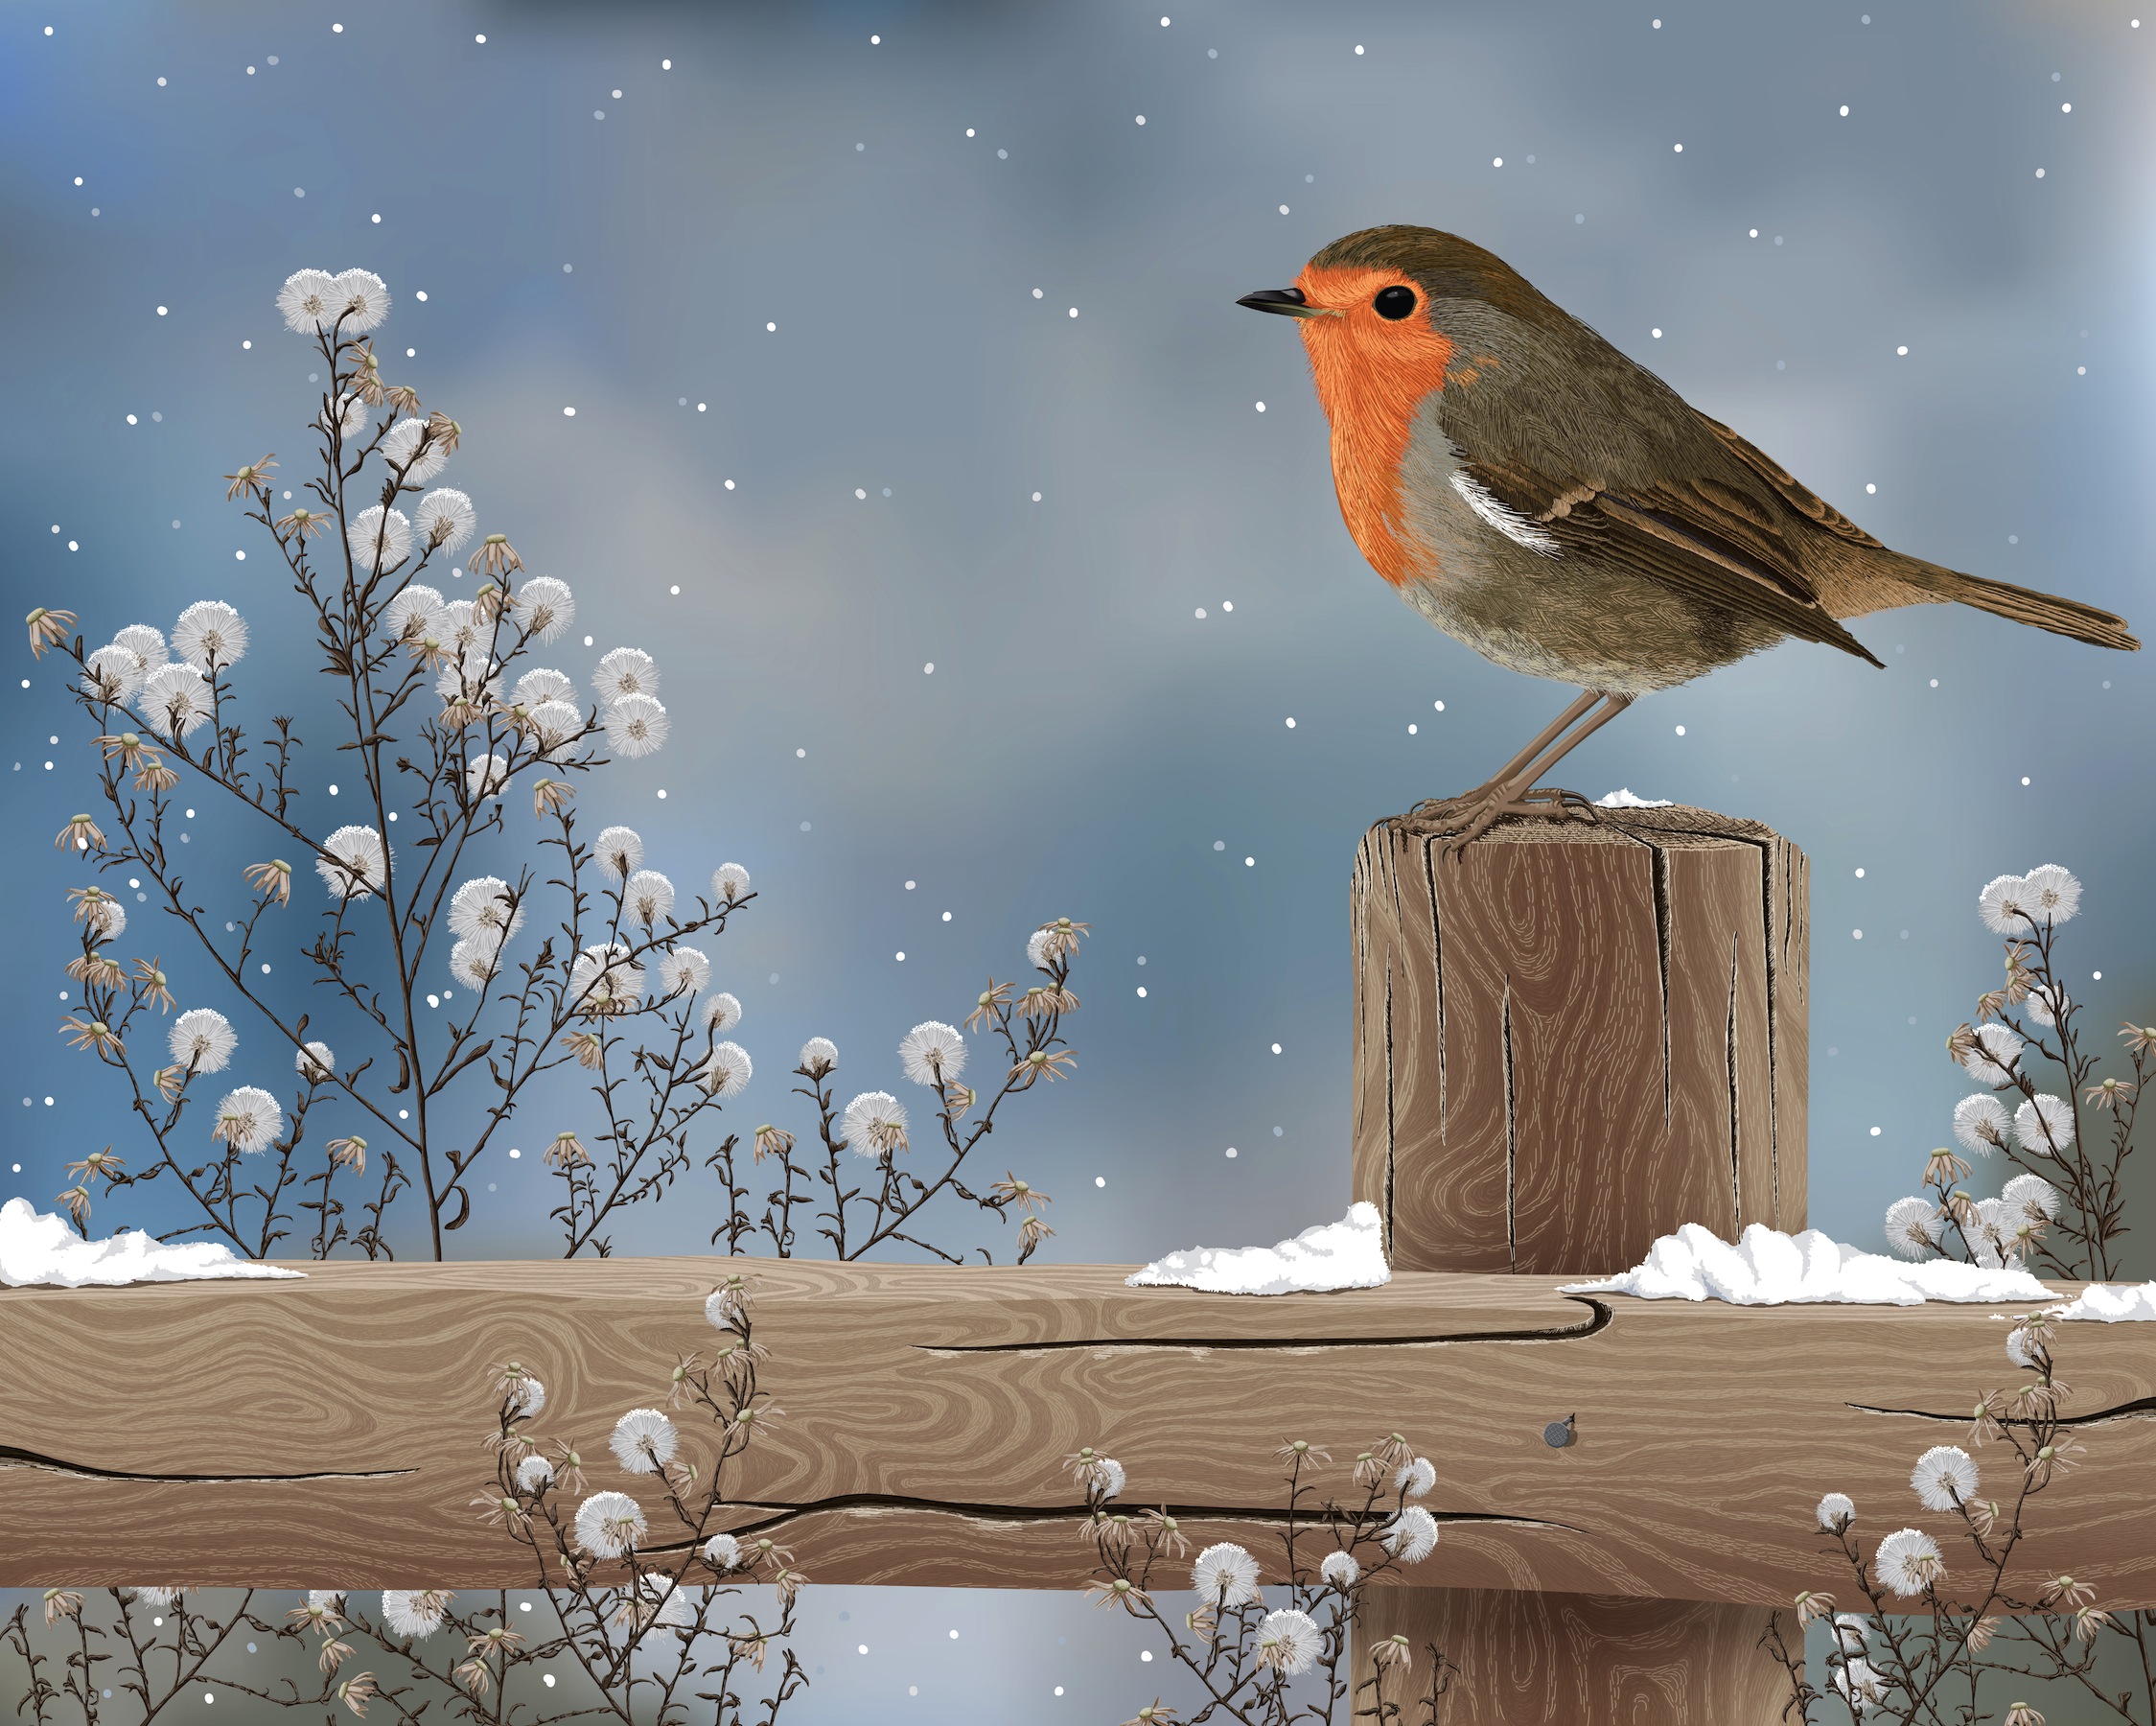 Скачать обои бесплатно Животные, Зима, Птицы, Снег, Дерево, Ограда, Робин картинка на рабочий стол ПК